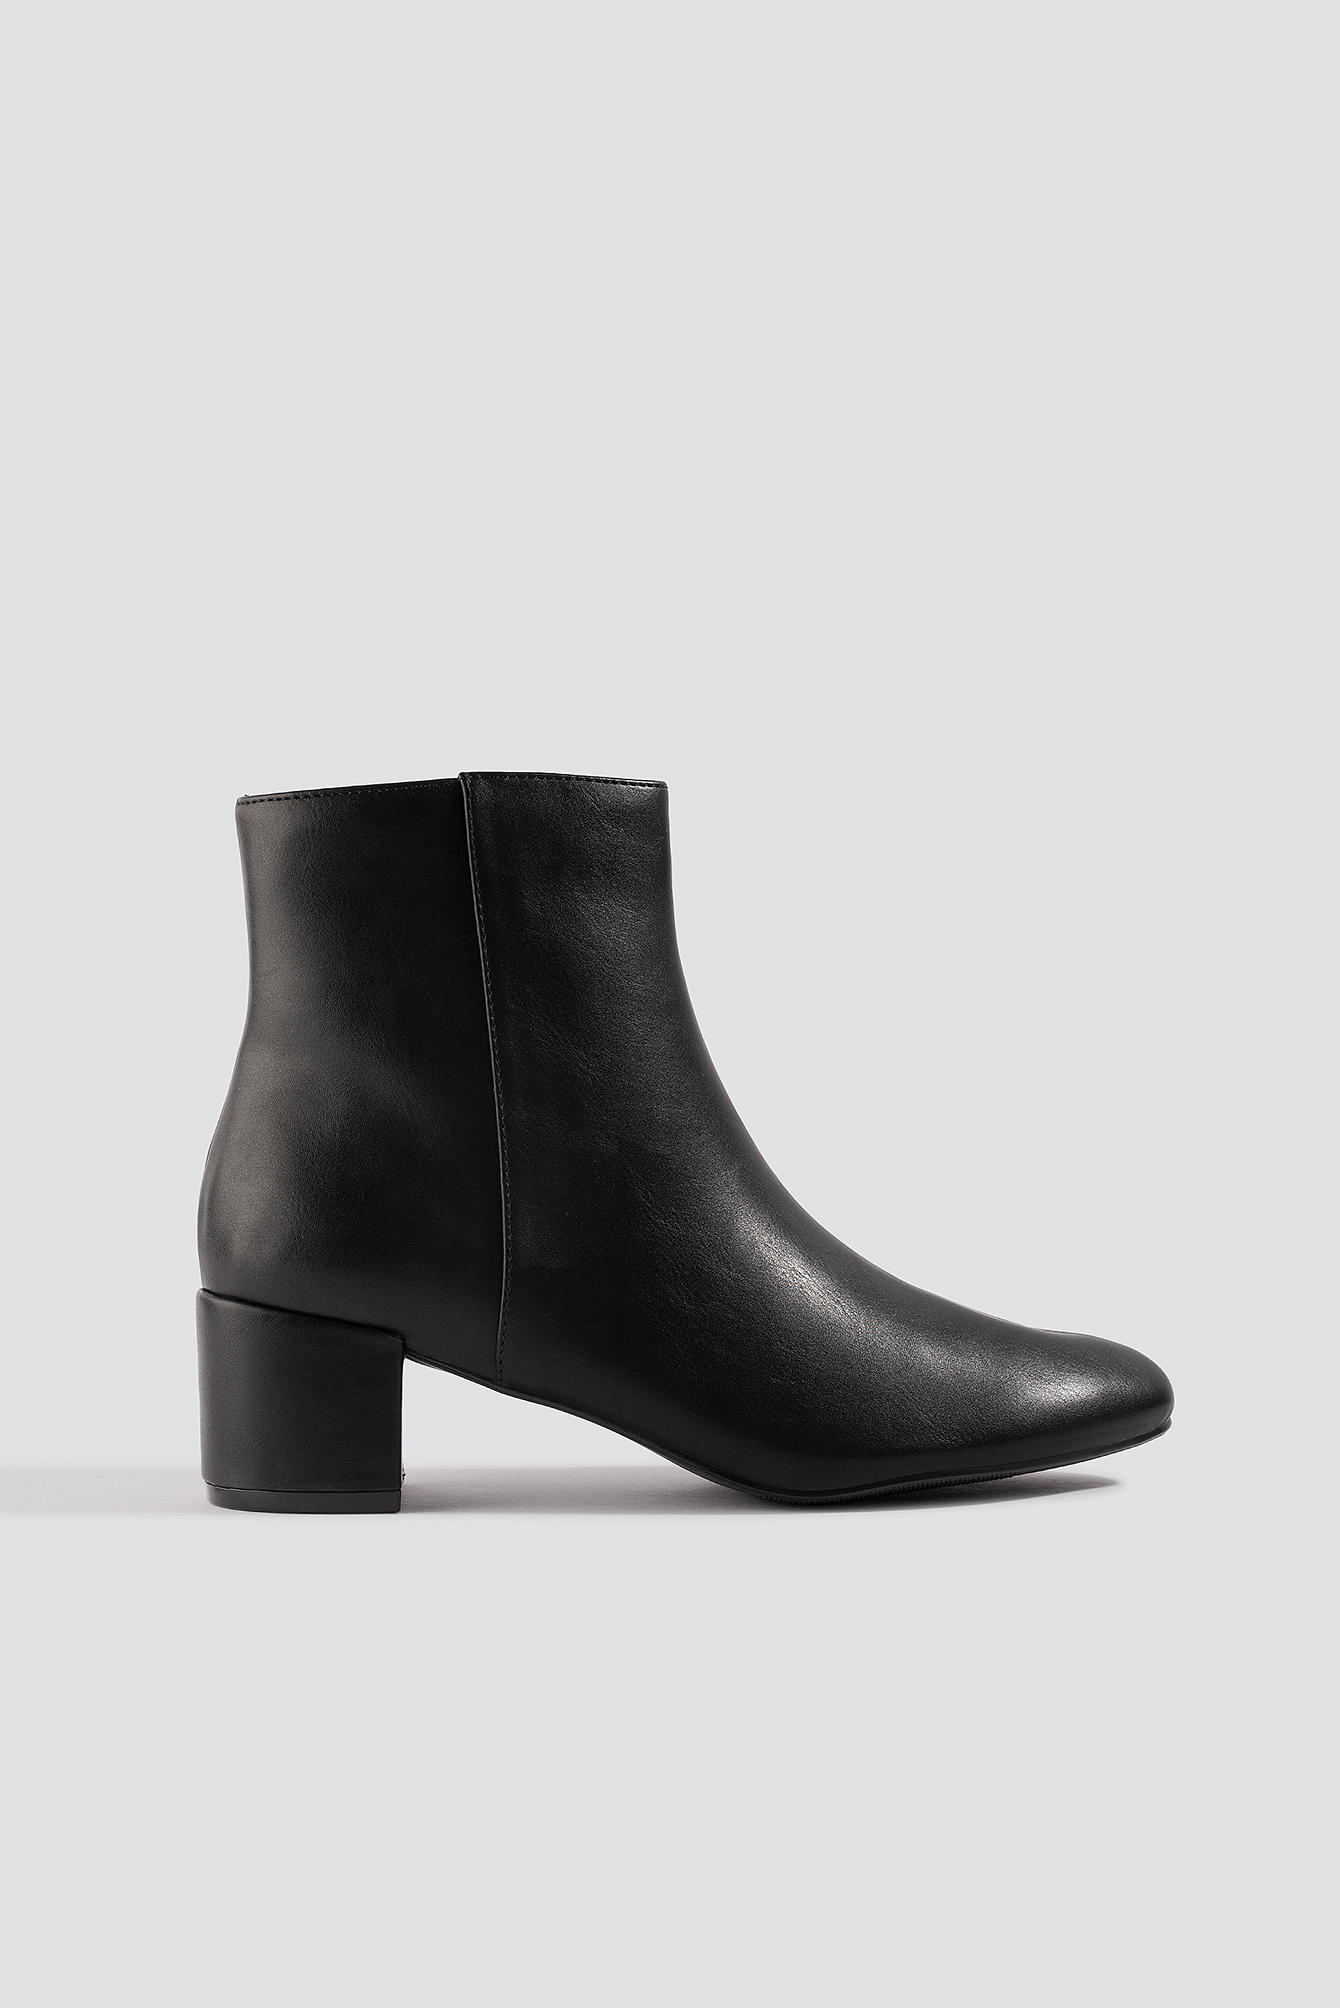 low black heel boots